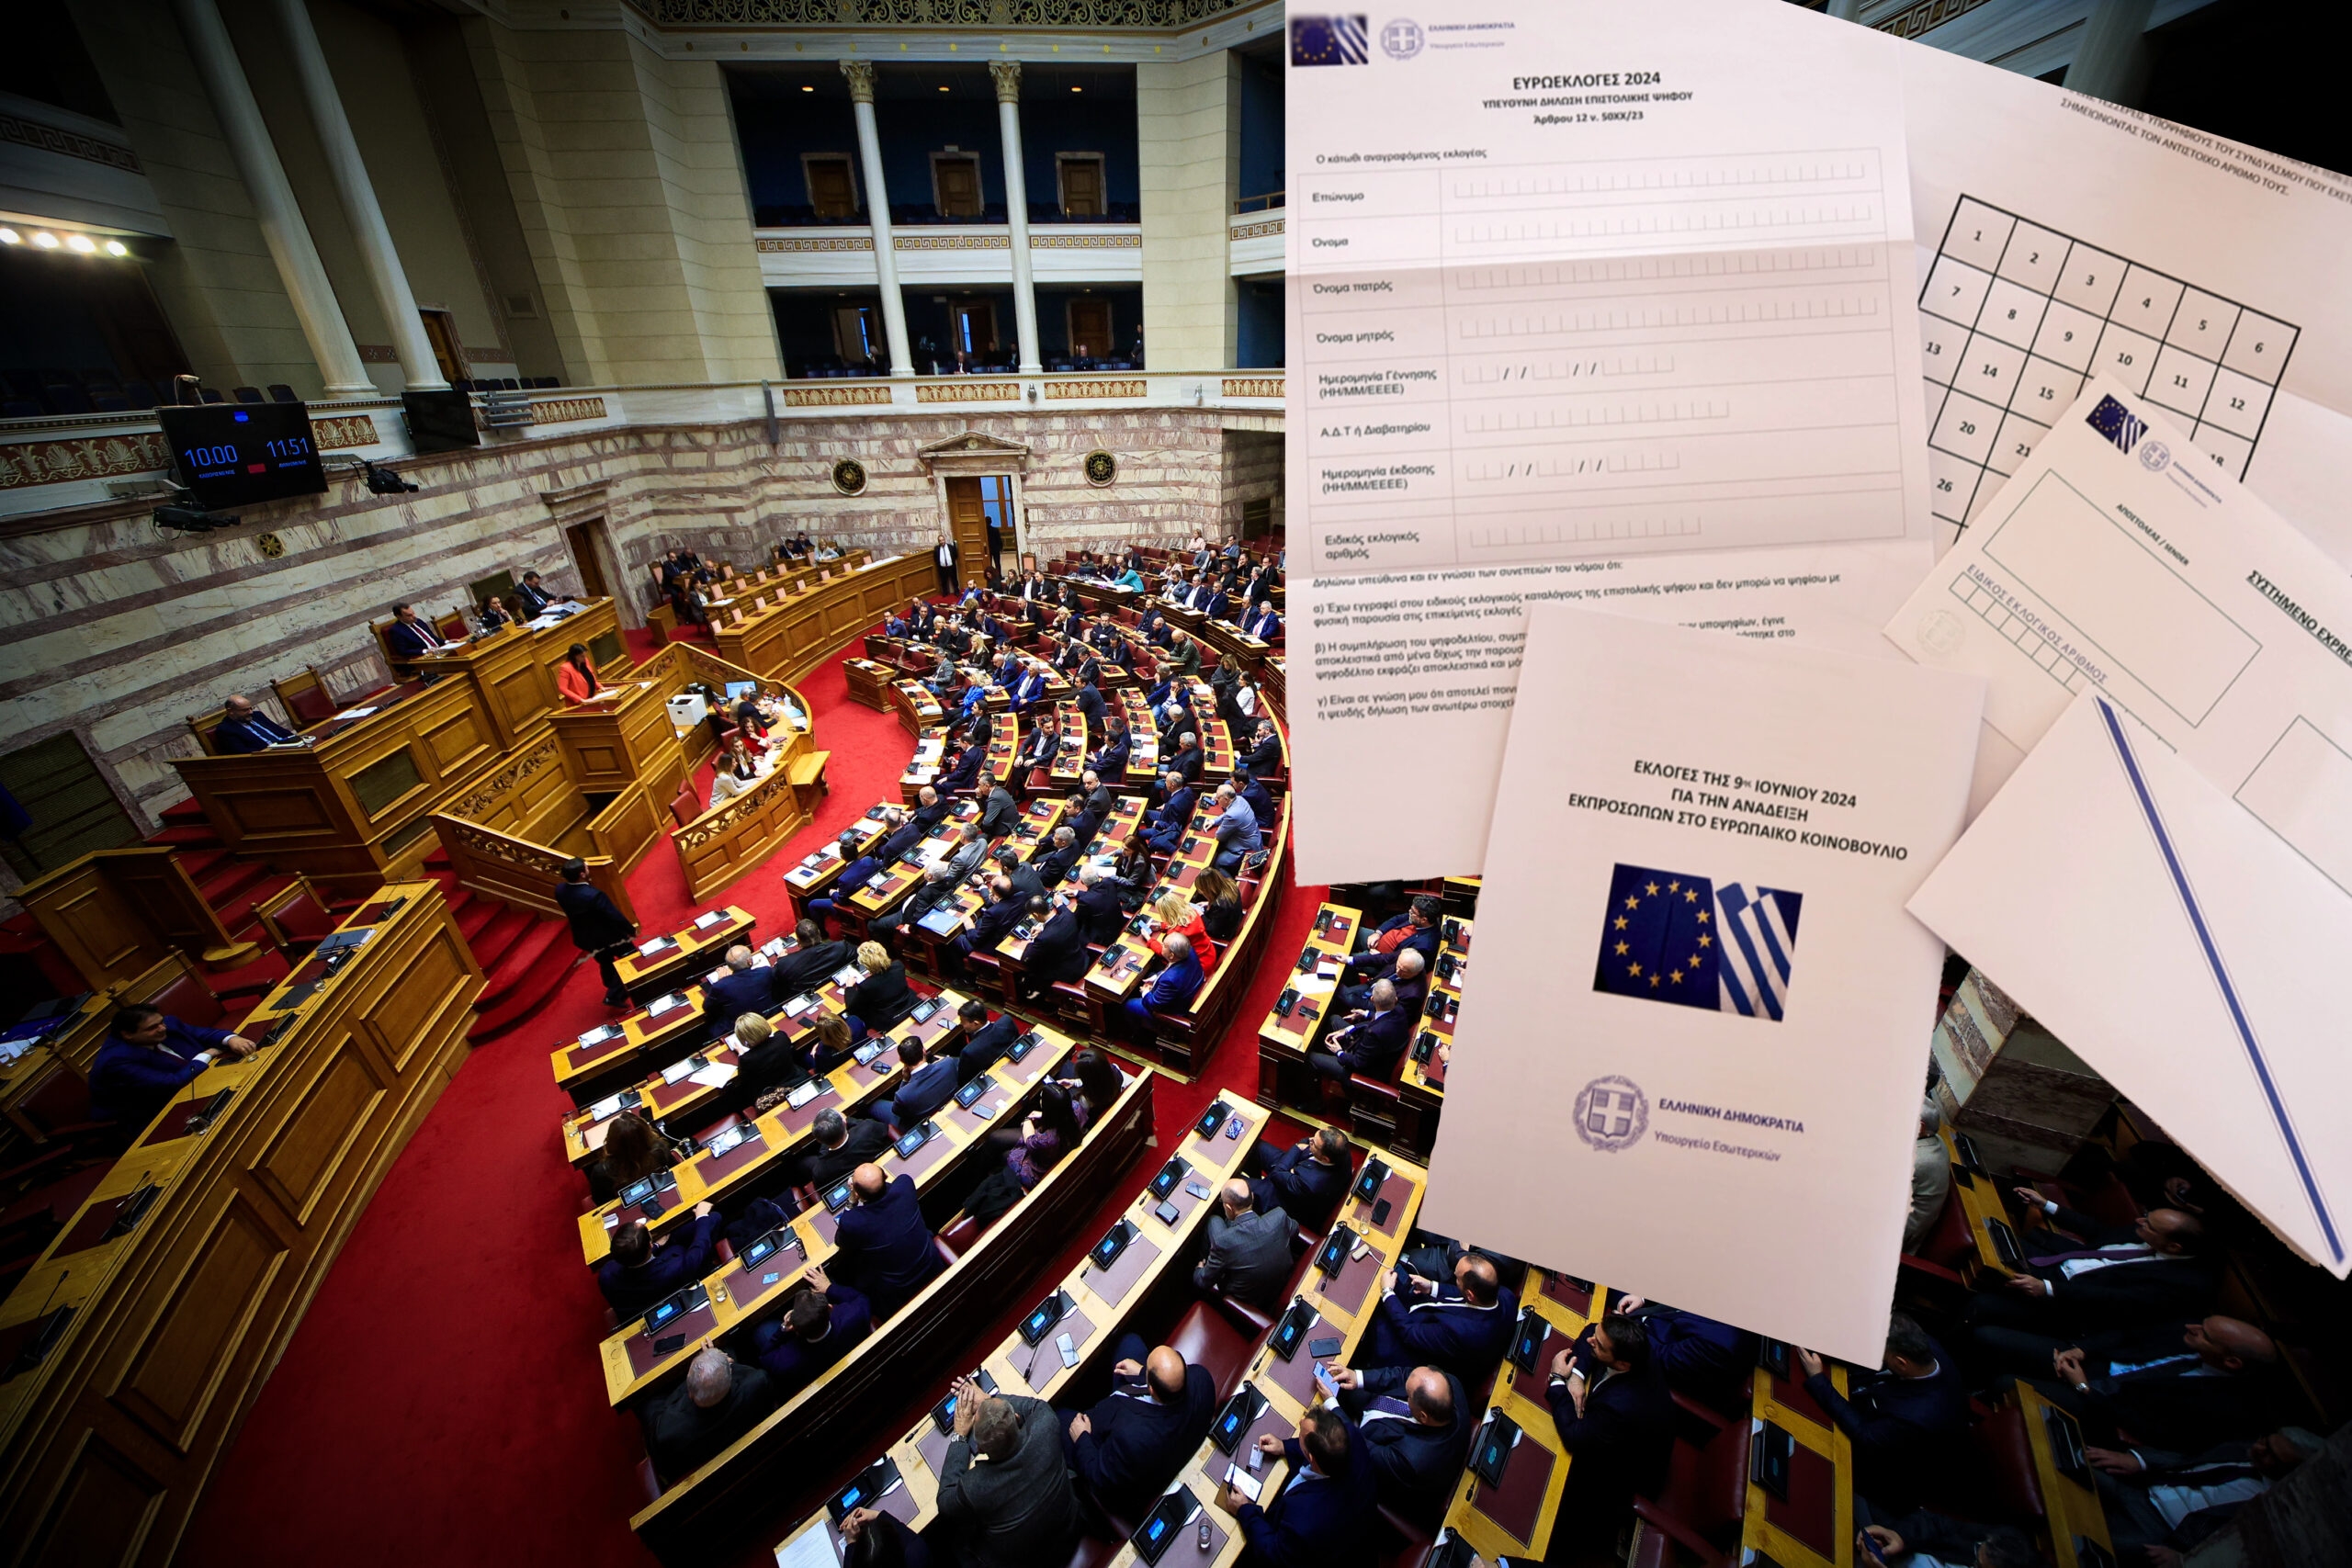 Λ. Κουσούλης στην ΕΡΤ: Γιατί ξέσπασε αντιπαράθεση στη Βουλή για την επιστολική – «Υποχρεωτικό συστατικό της δημοκρατίας η διαλογική συνύπαρξη»